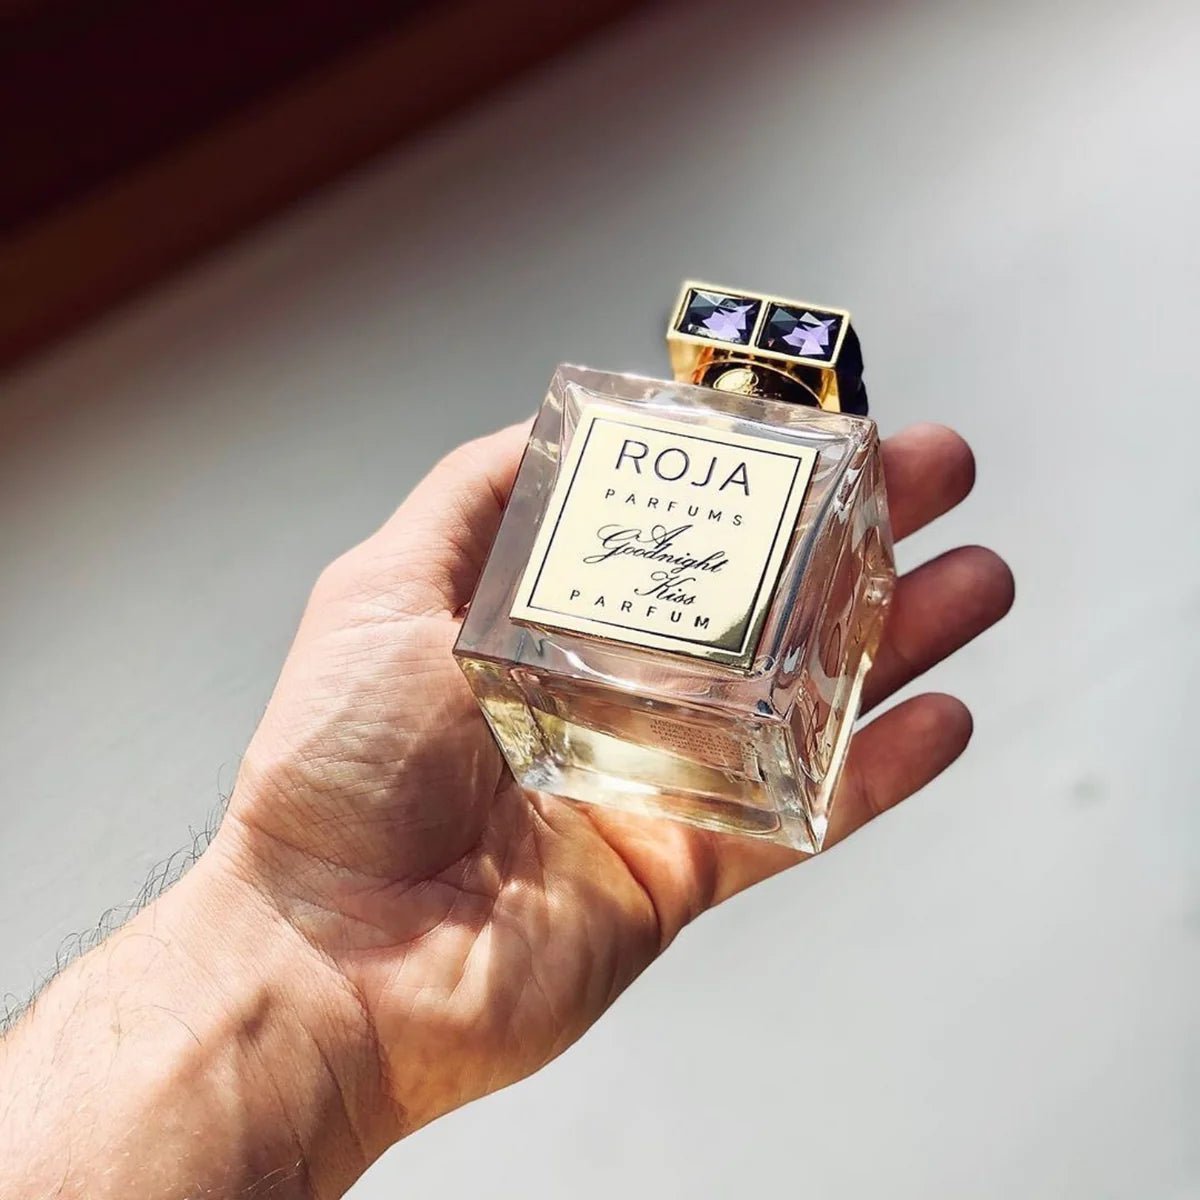 Roja Parfums A Goodnight Kiss Parfum | My Perfume Shop Australia